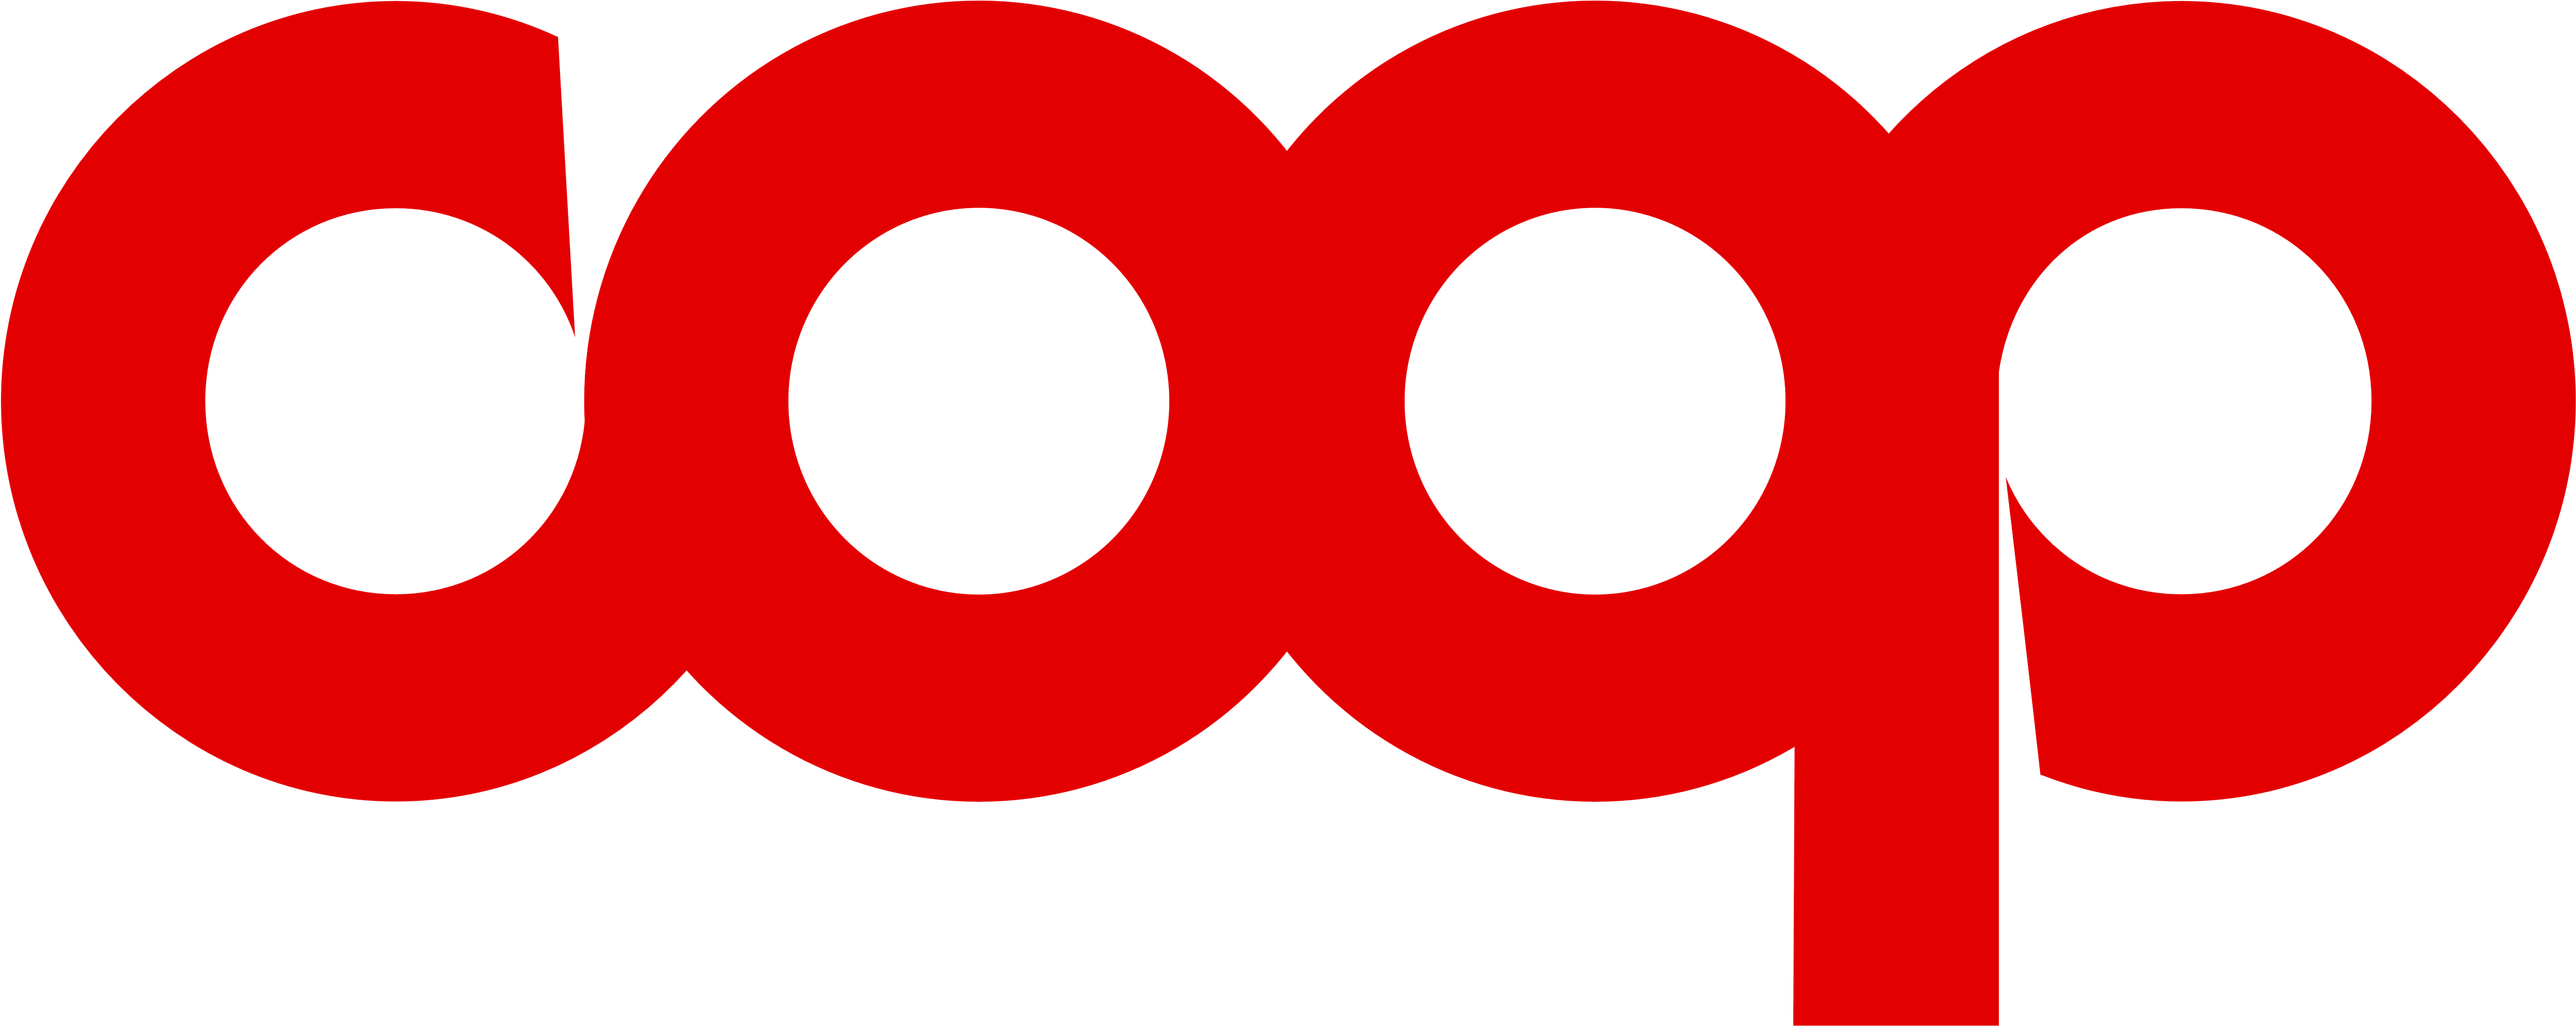 Clip Art Coop Logos - Coop Italia Logo (5000x2150)